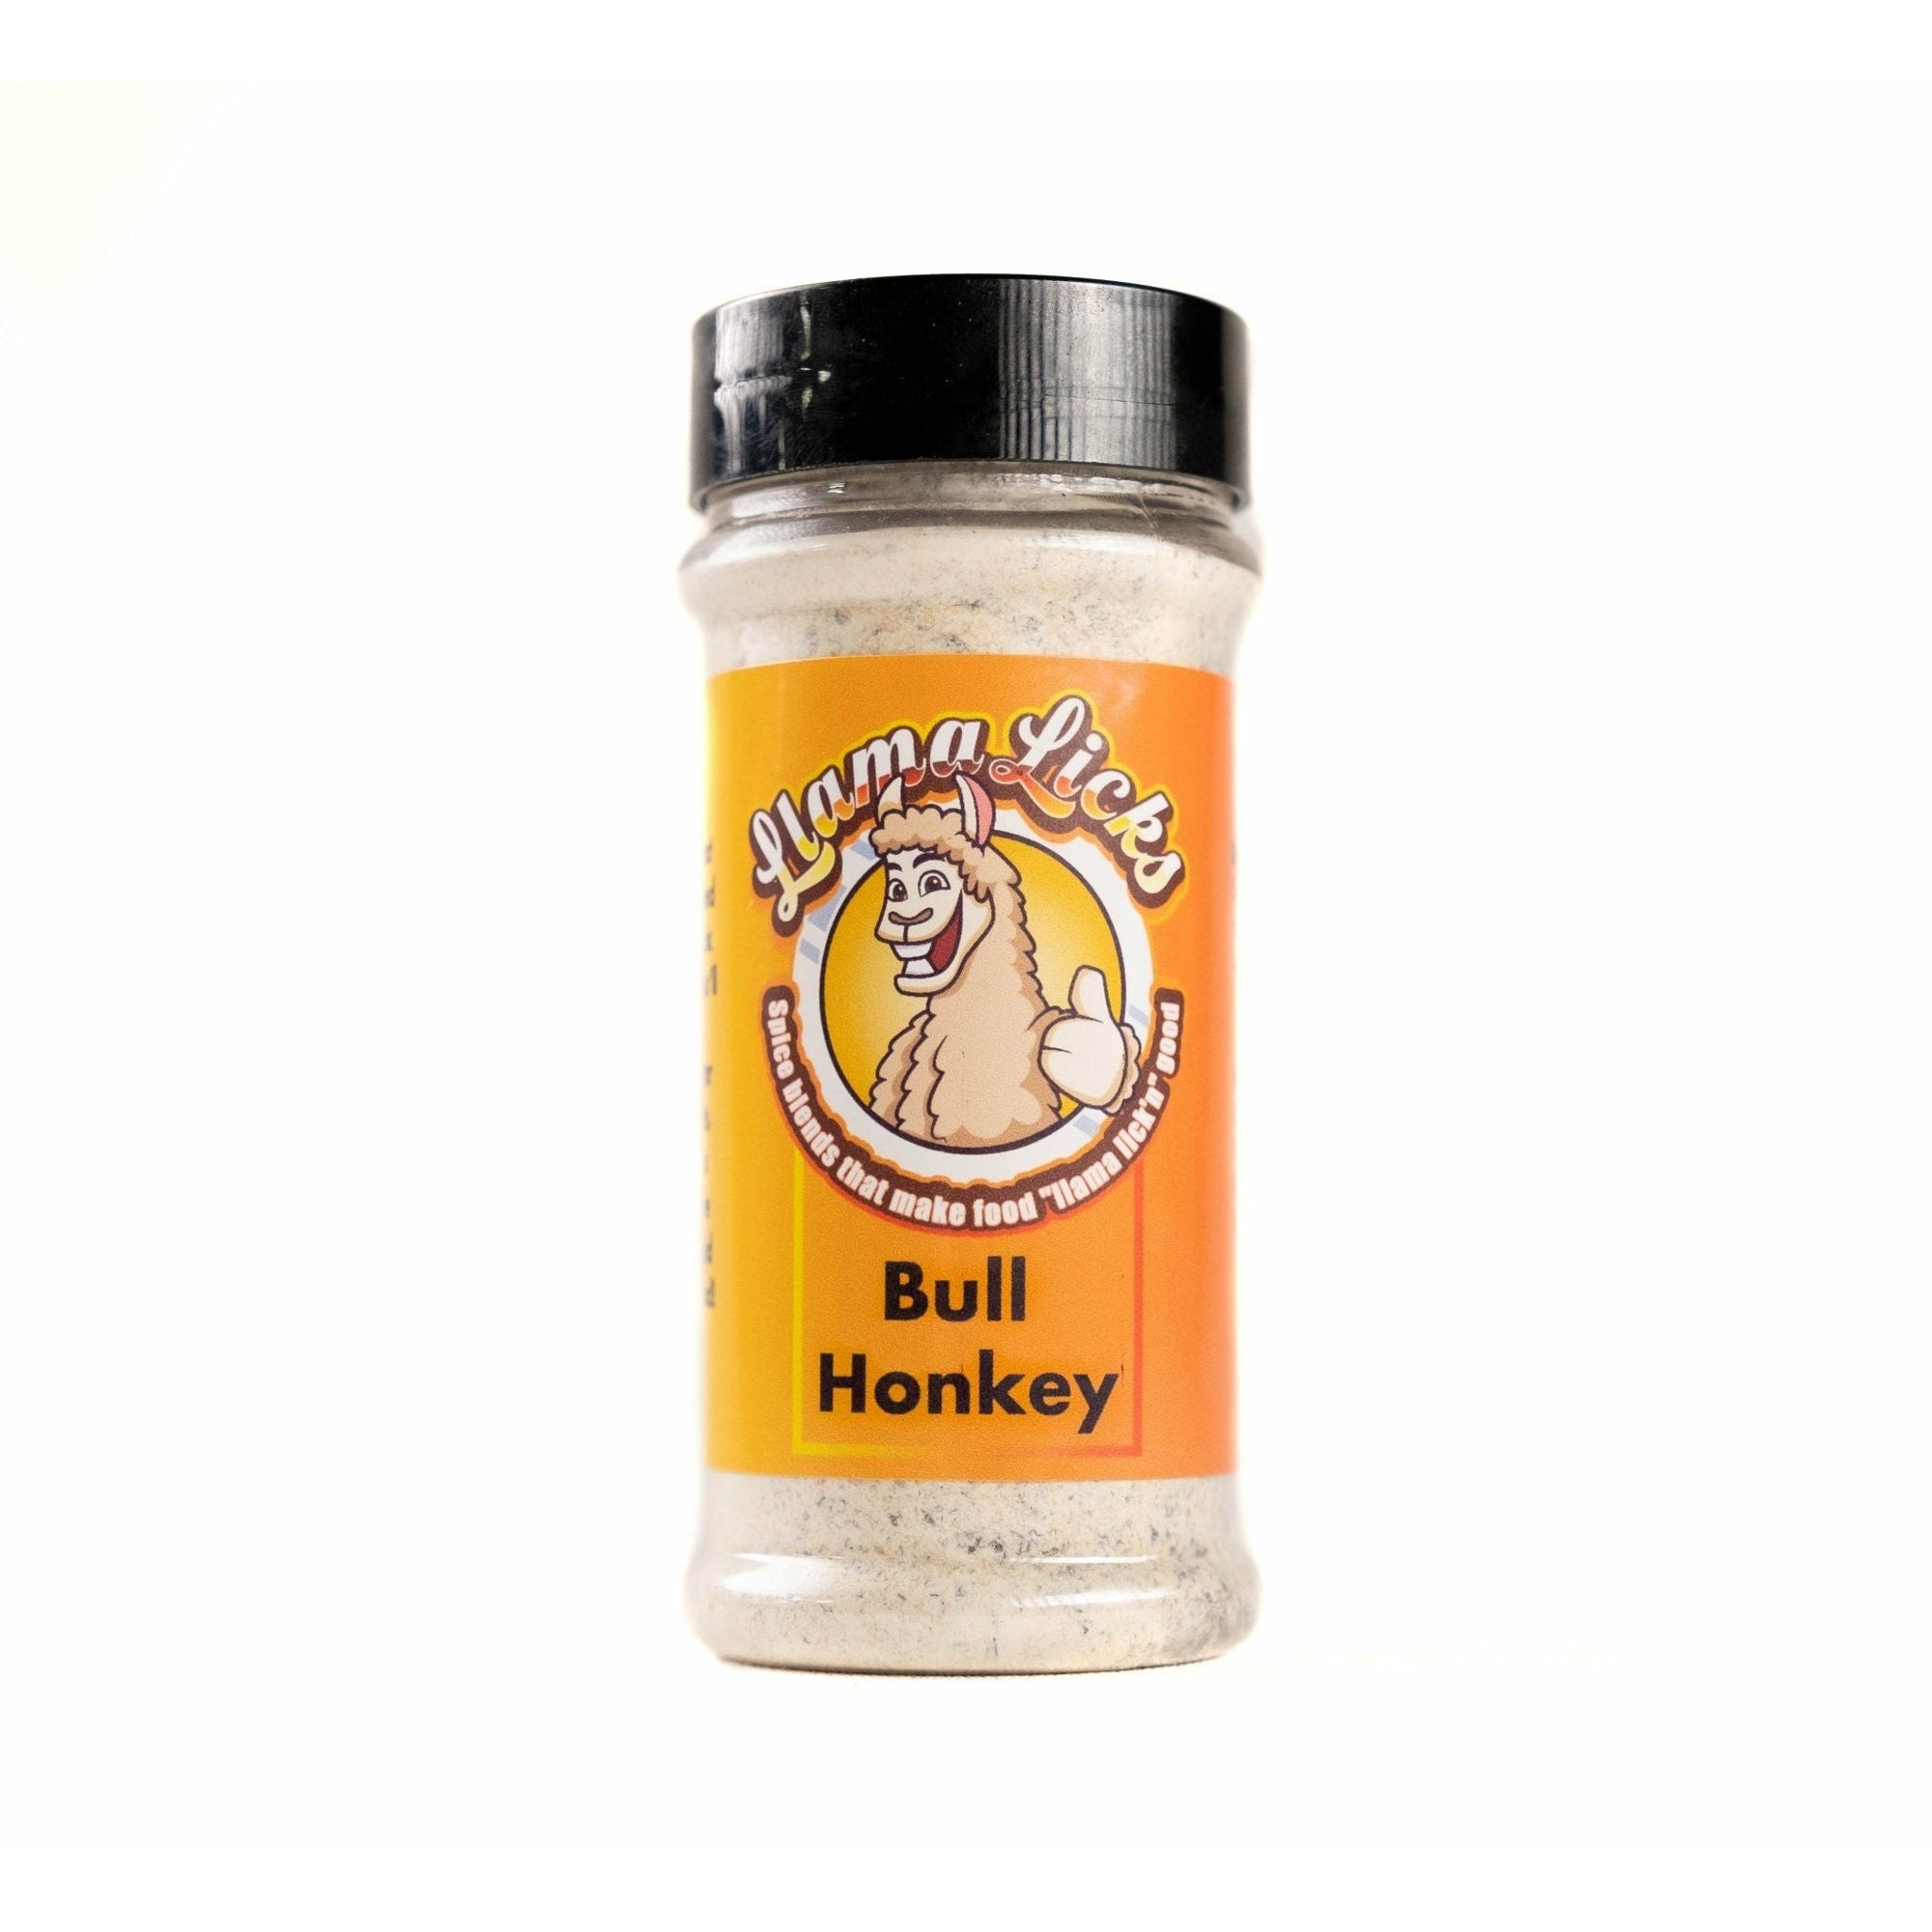 Bull Honkey Seasoning Llama Licks Firebee Honey 